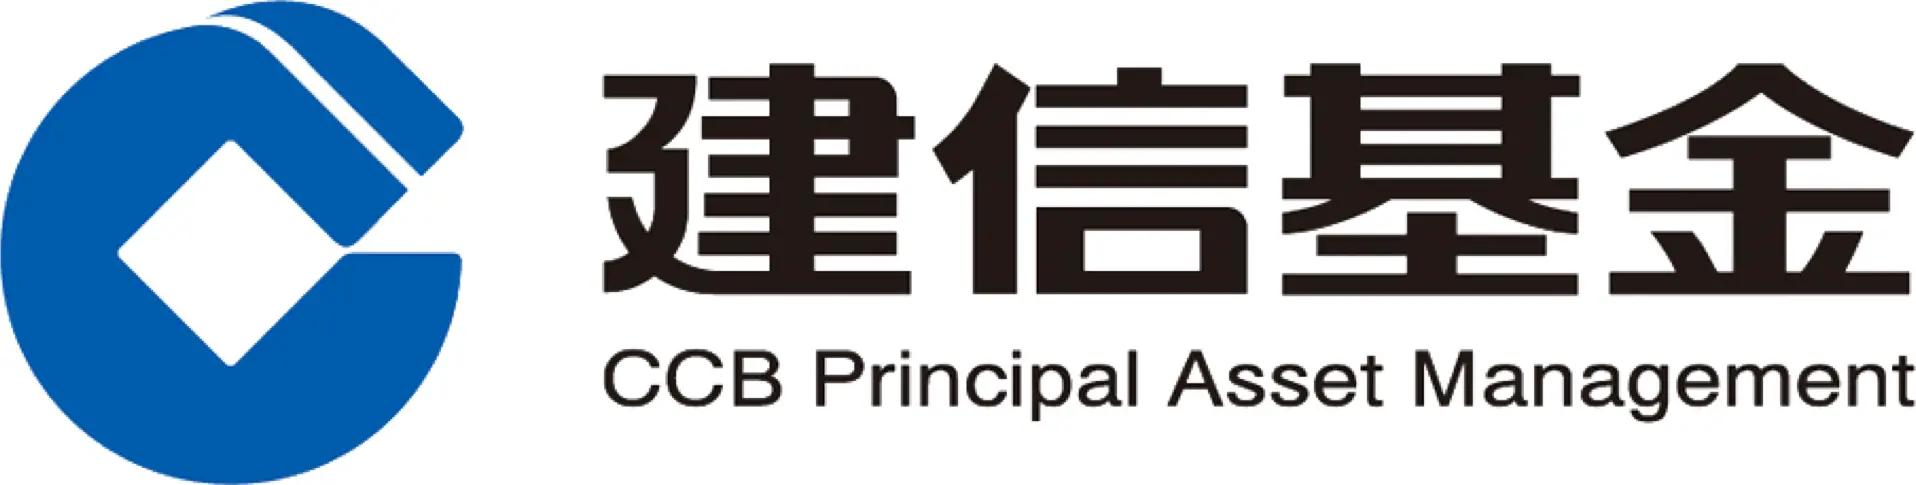 CCB Principal Asset Management